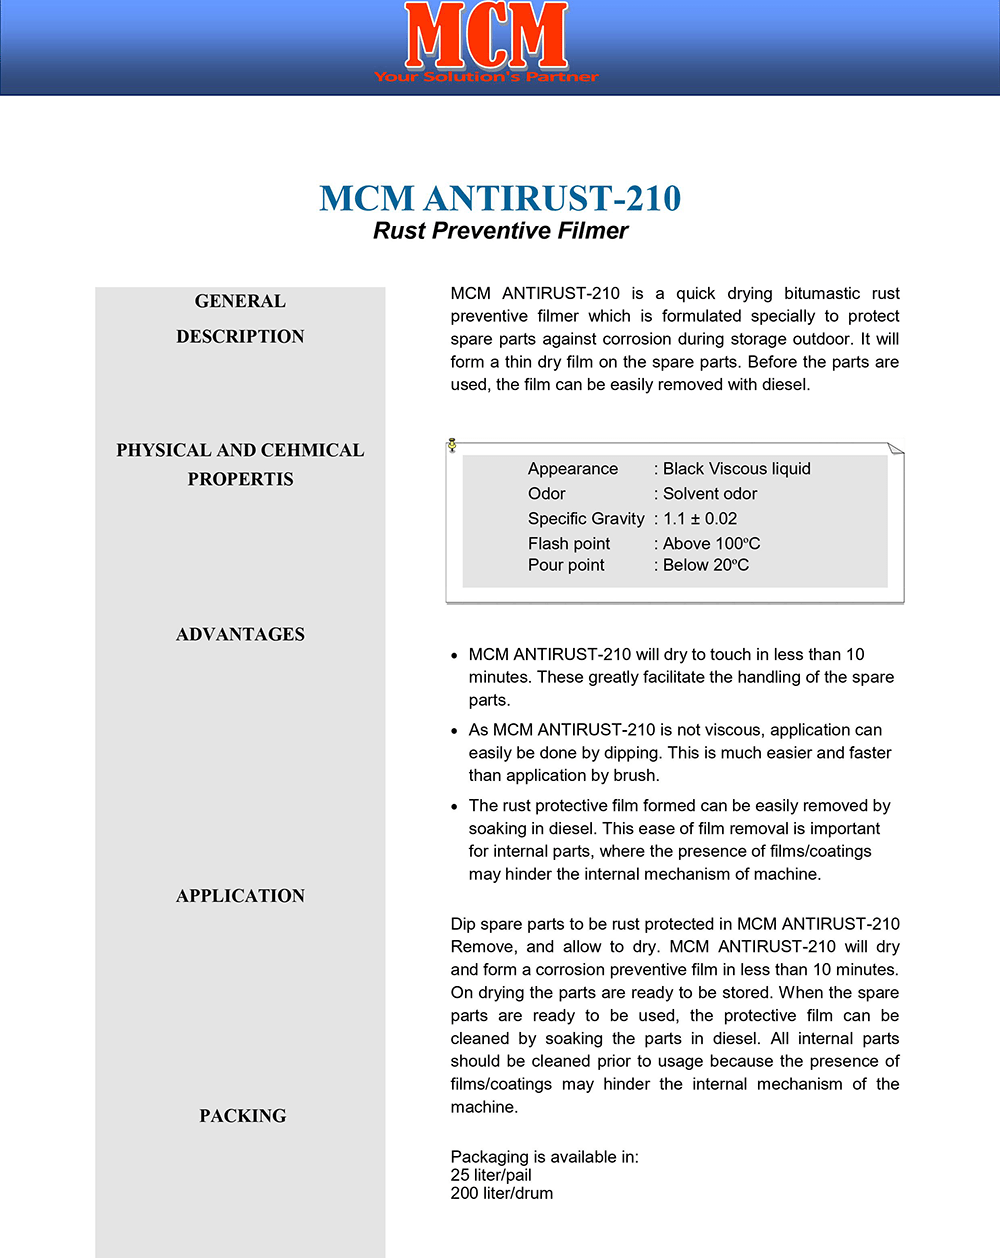 MCM ANTIRUST-210